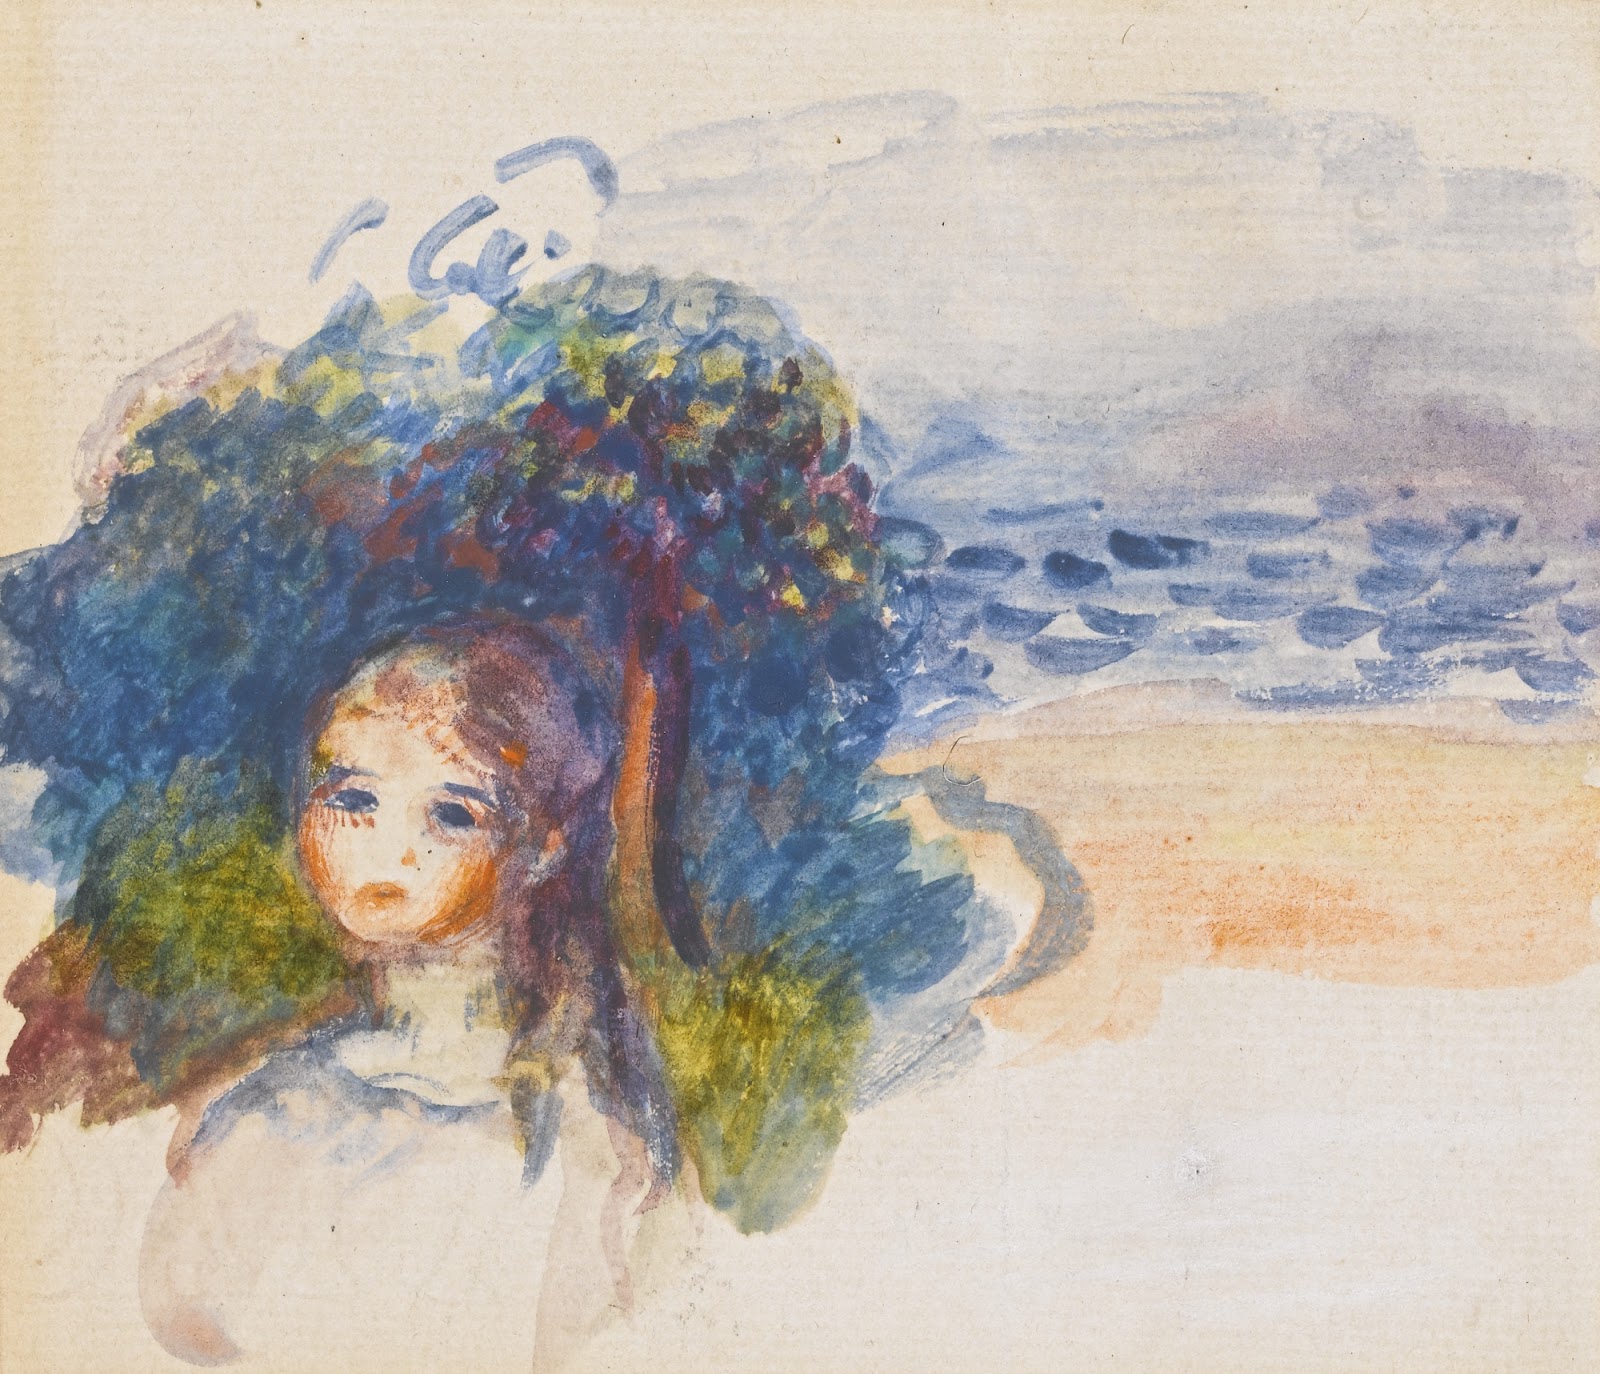 Pierre+Auguste+Renoir-1841-1-19 (728).jpg